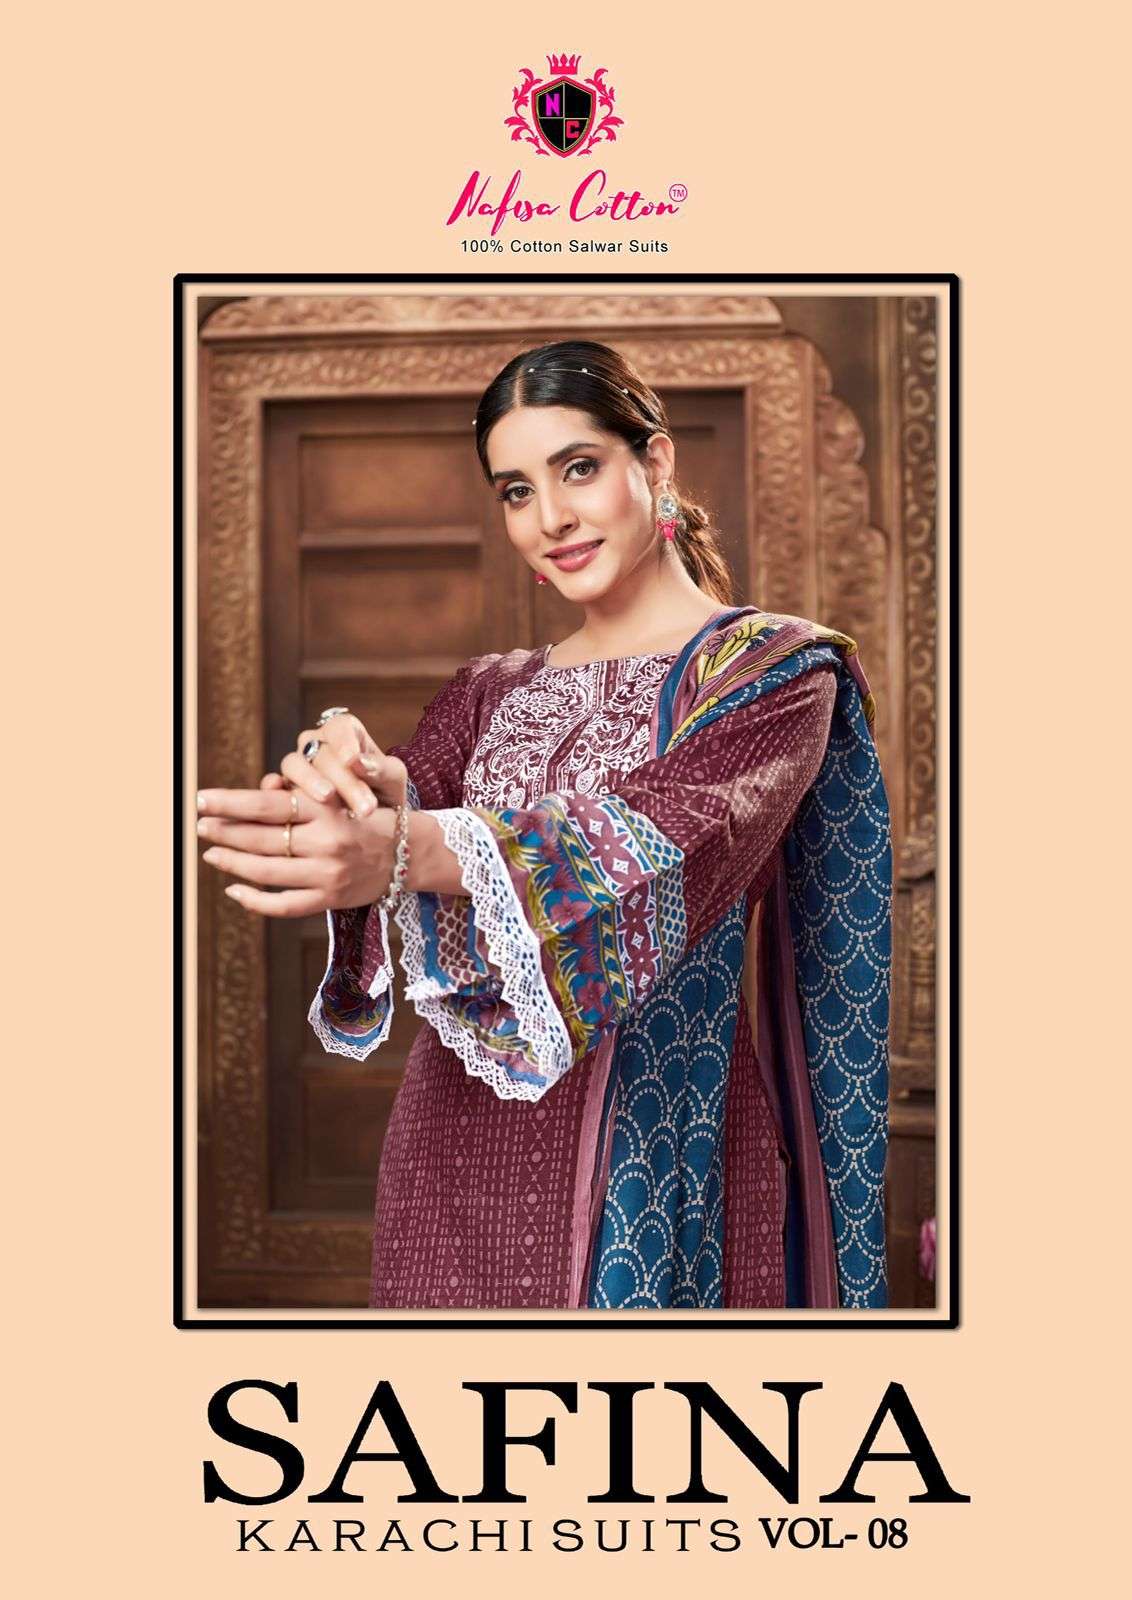 safina karachi suits vol-8 by nafisa cotton 8001-8006 series soft cotton designer pakistani suits catalogue manufacturer surat gujarat 